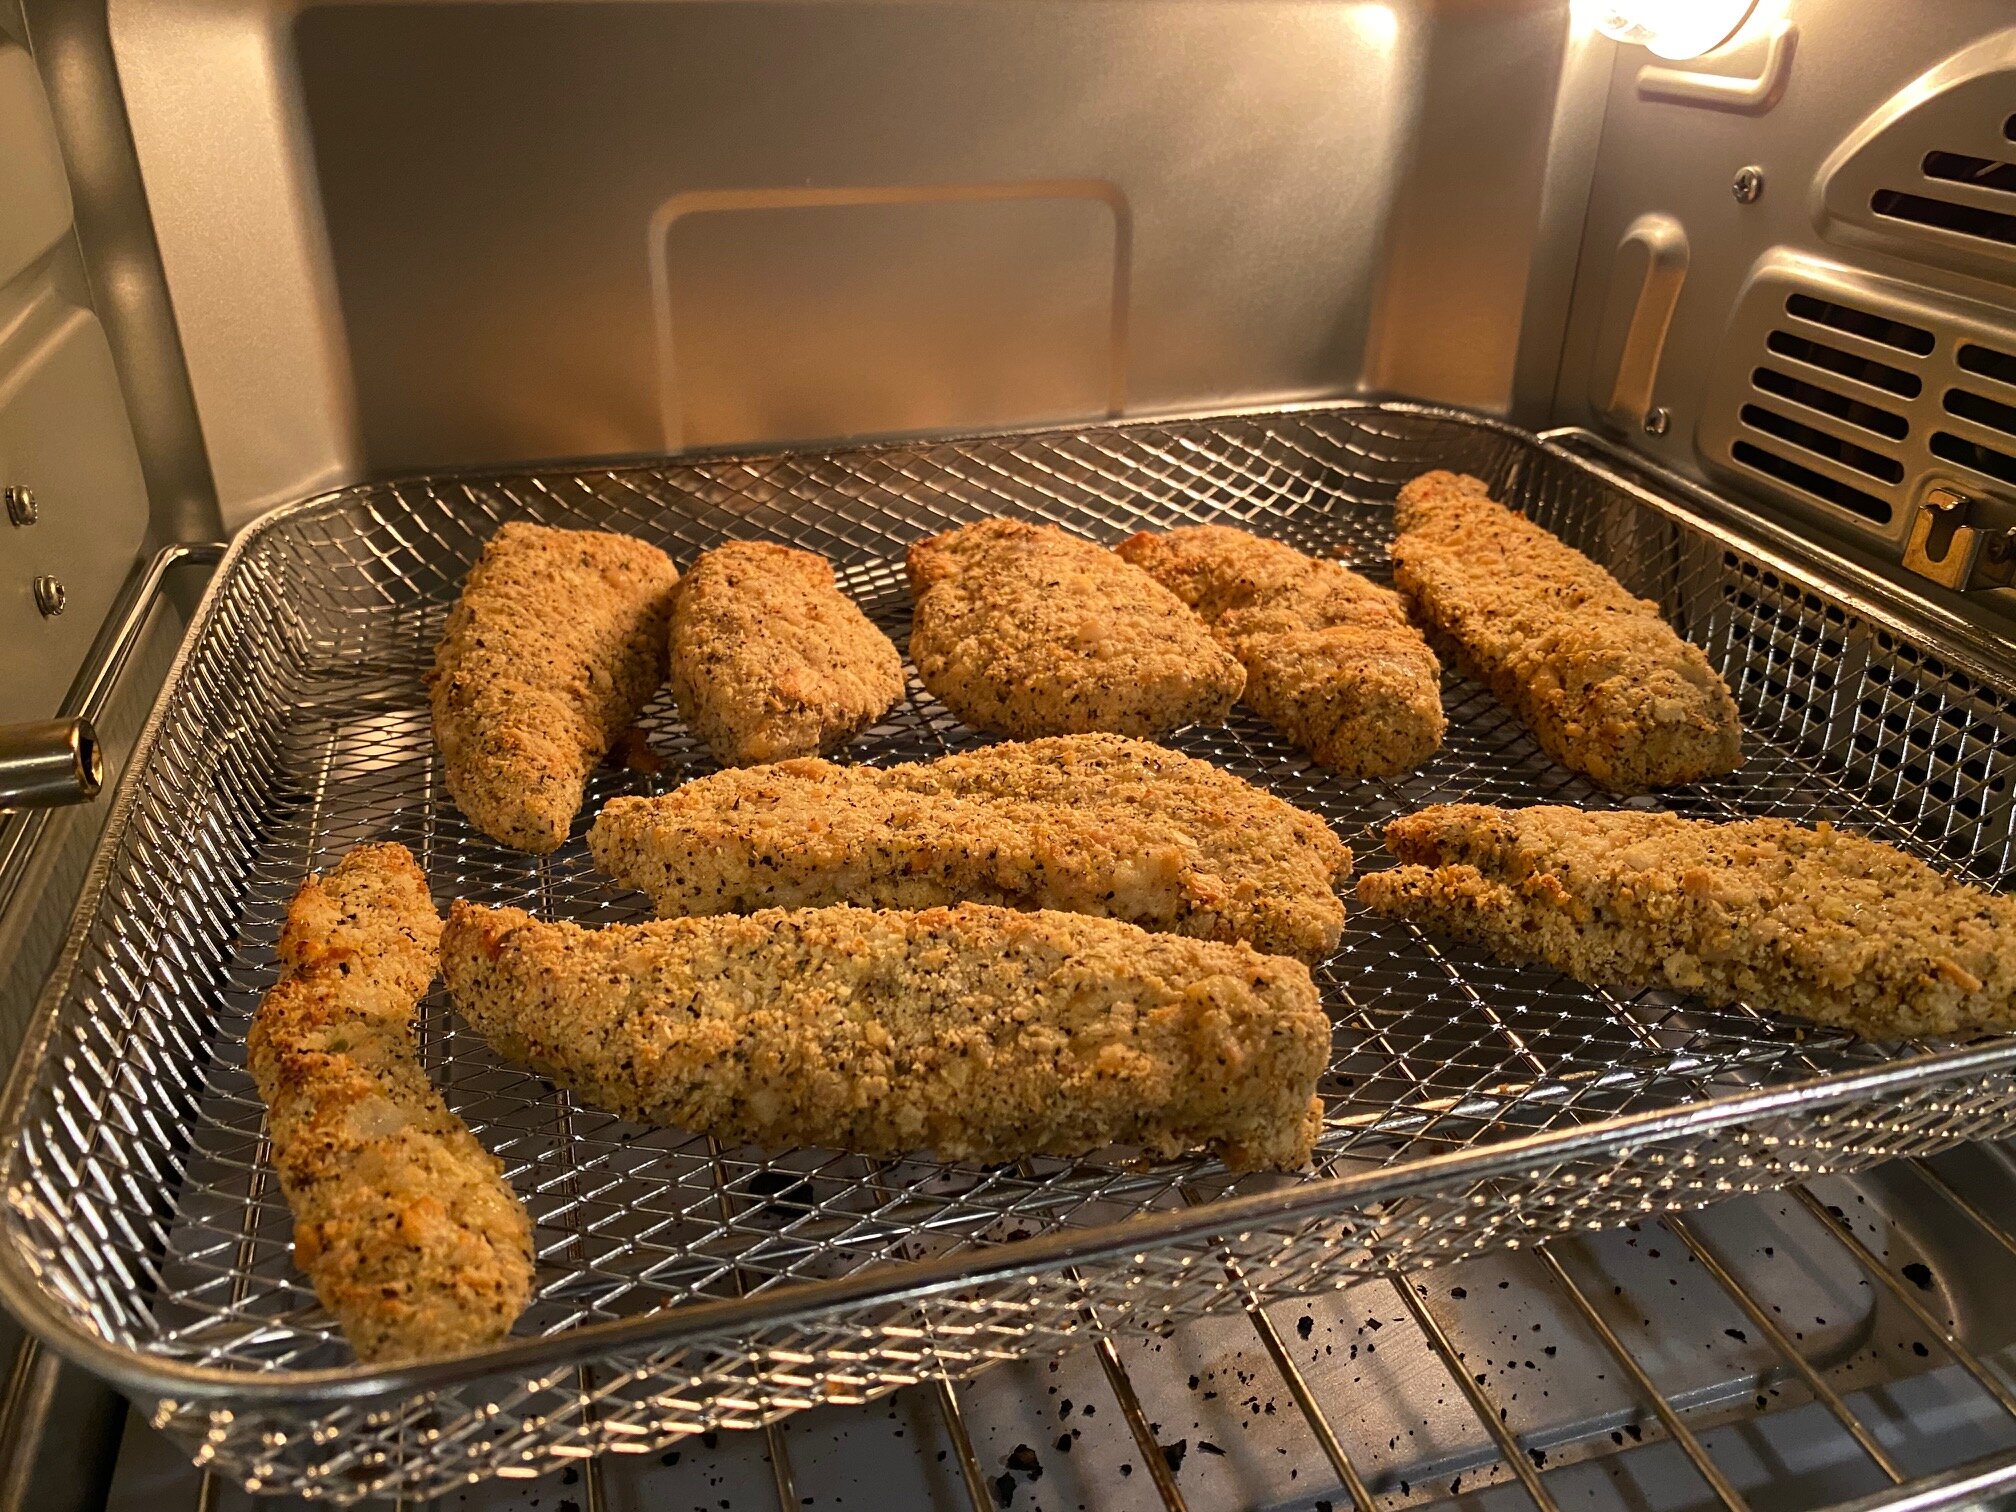 Fried Chicken Tenderloins Emeril Lagasse Power Air Fryer 360 XL 